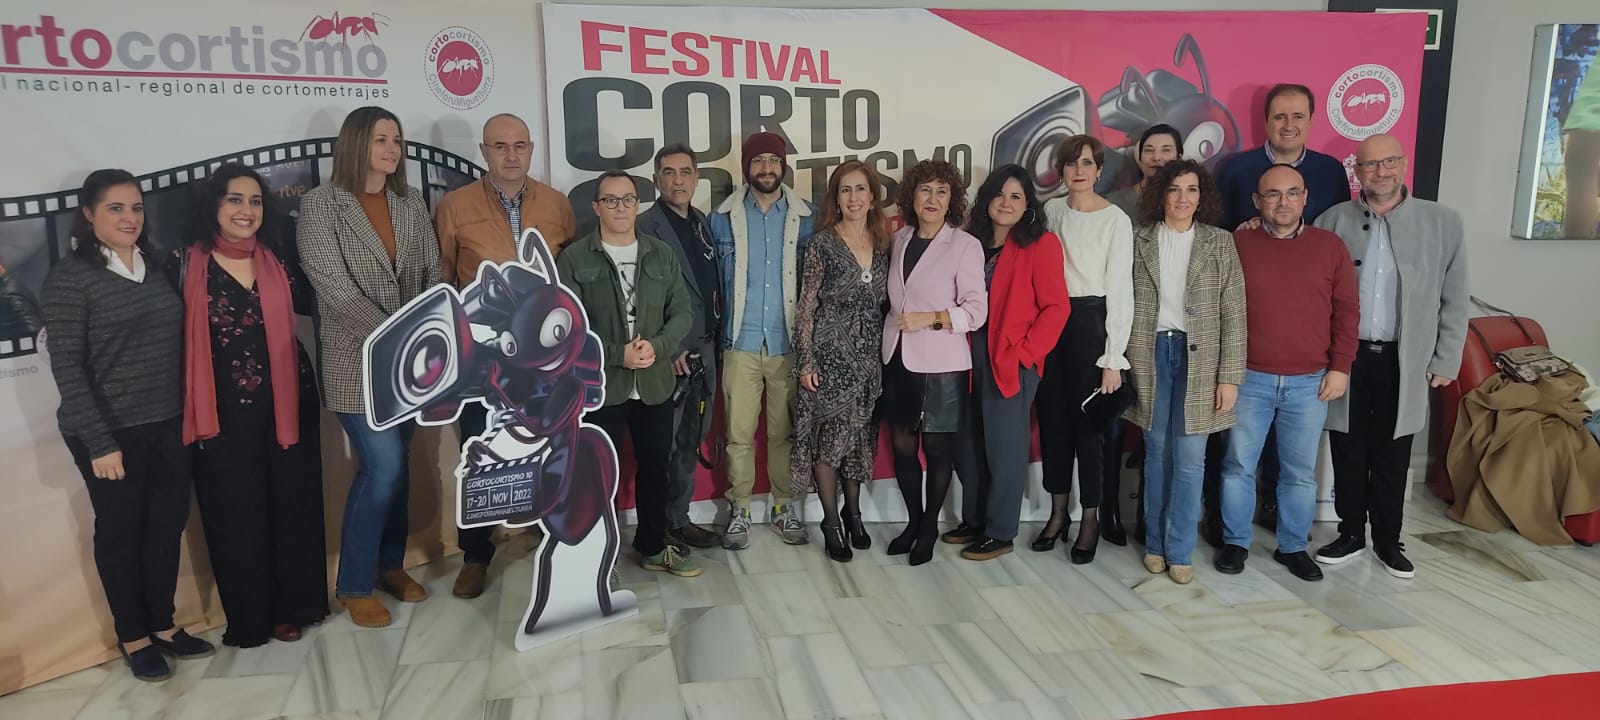 Los realizadores manchegos Paula Fernández y Rafael Arroyo revindican más apoyo al cine y a los festivales